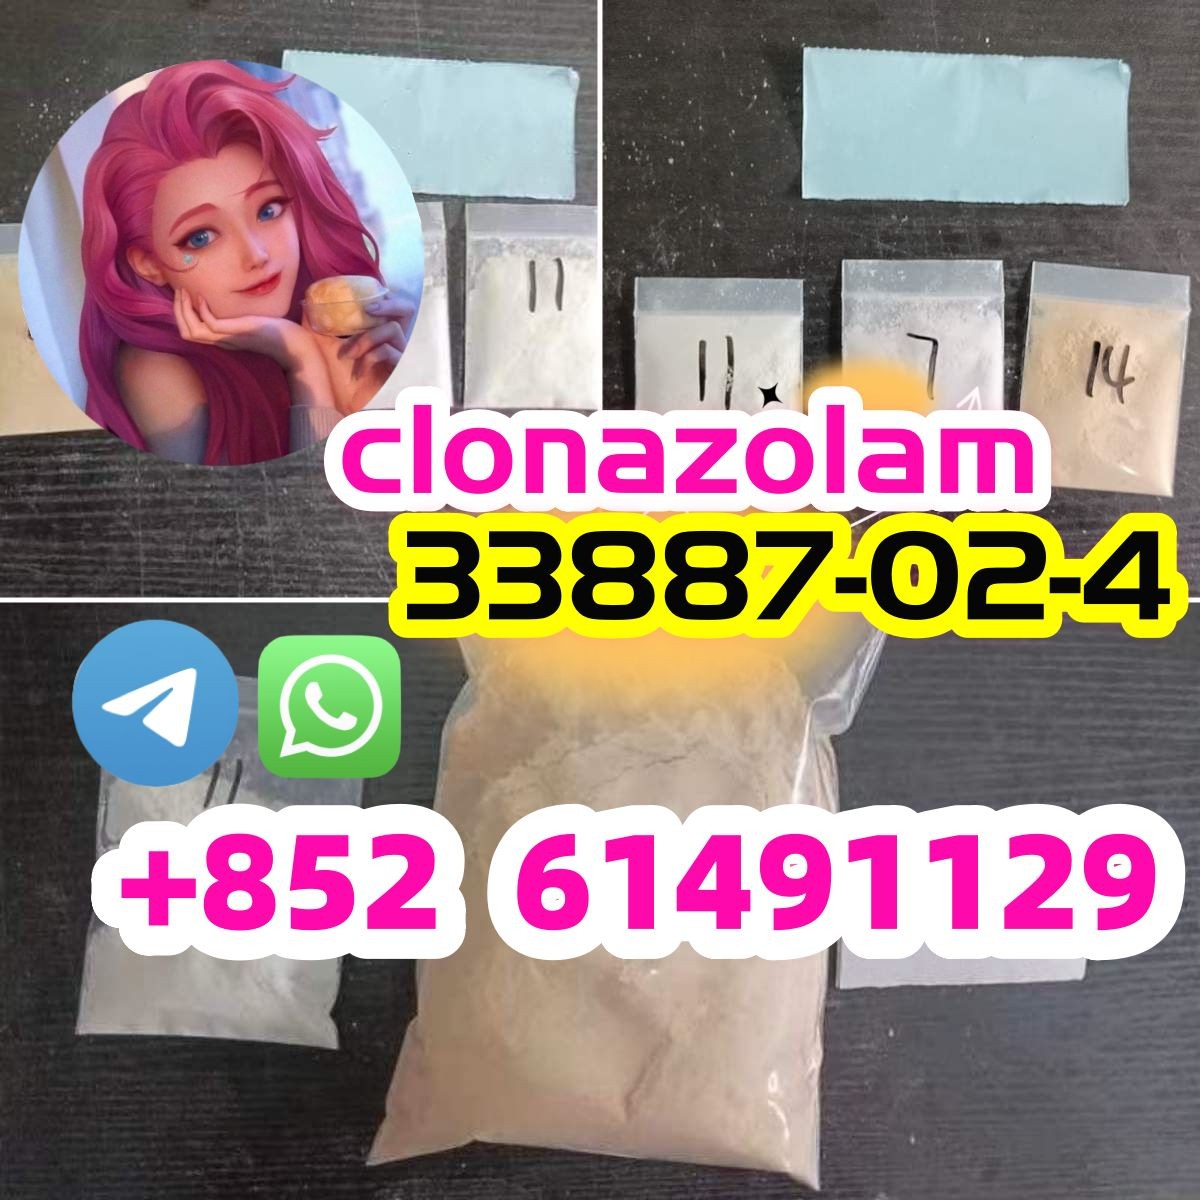 clonazolam 33887-02-4 WhatsApp/Telegram:+852 61491129-pic_1